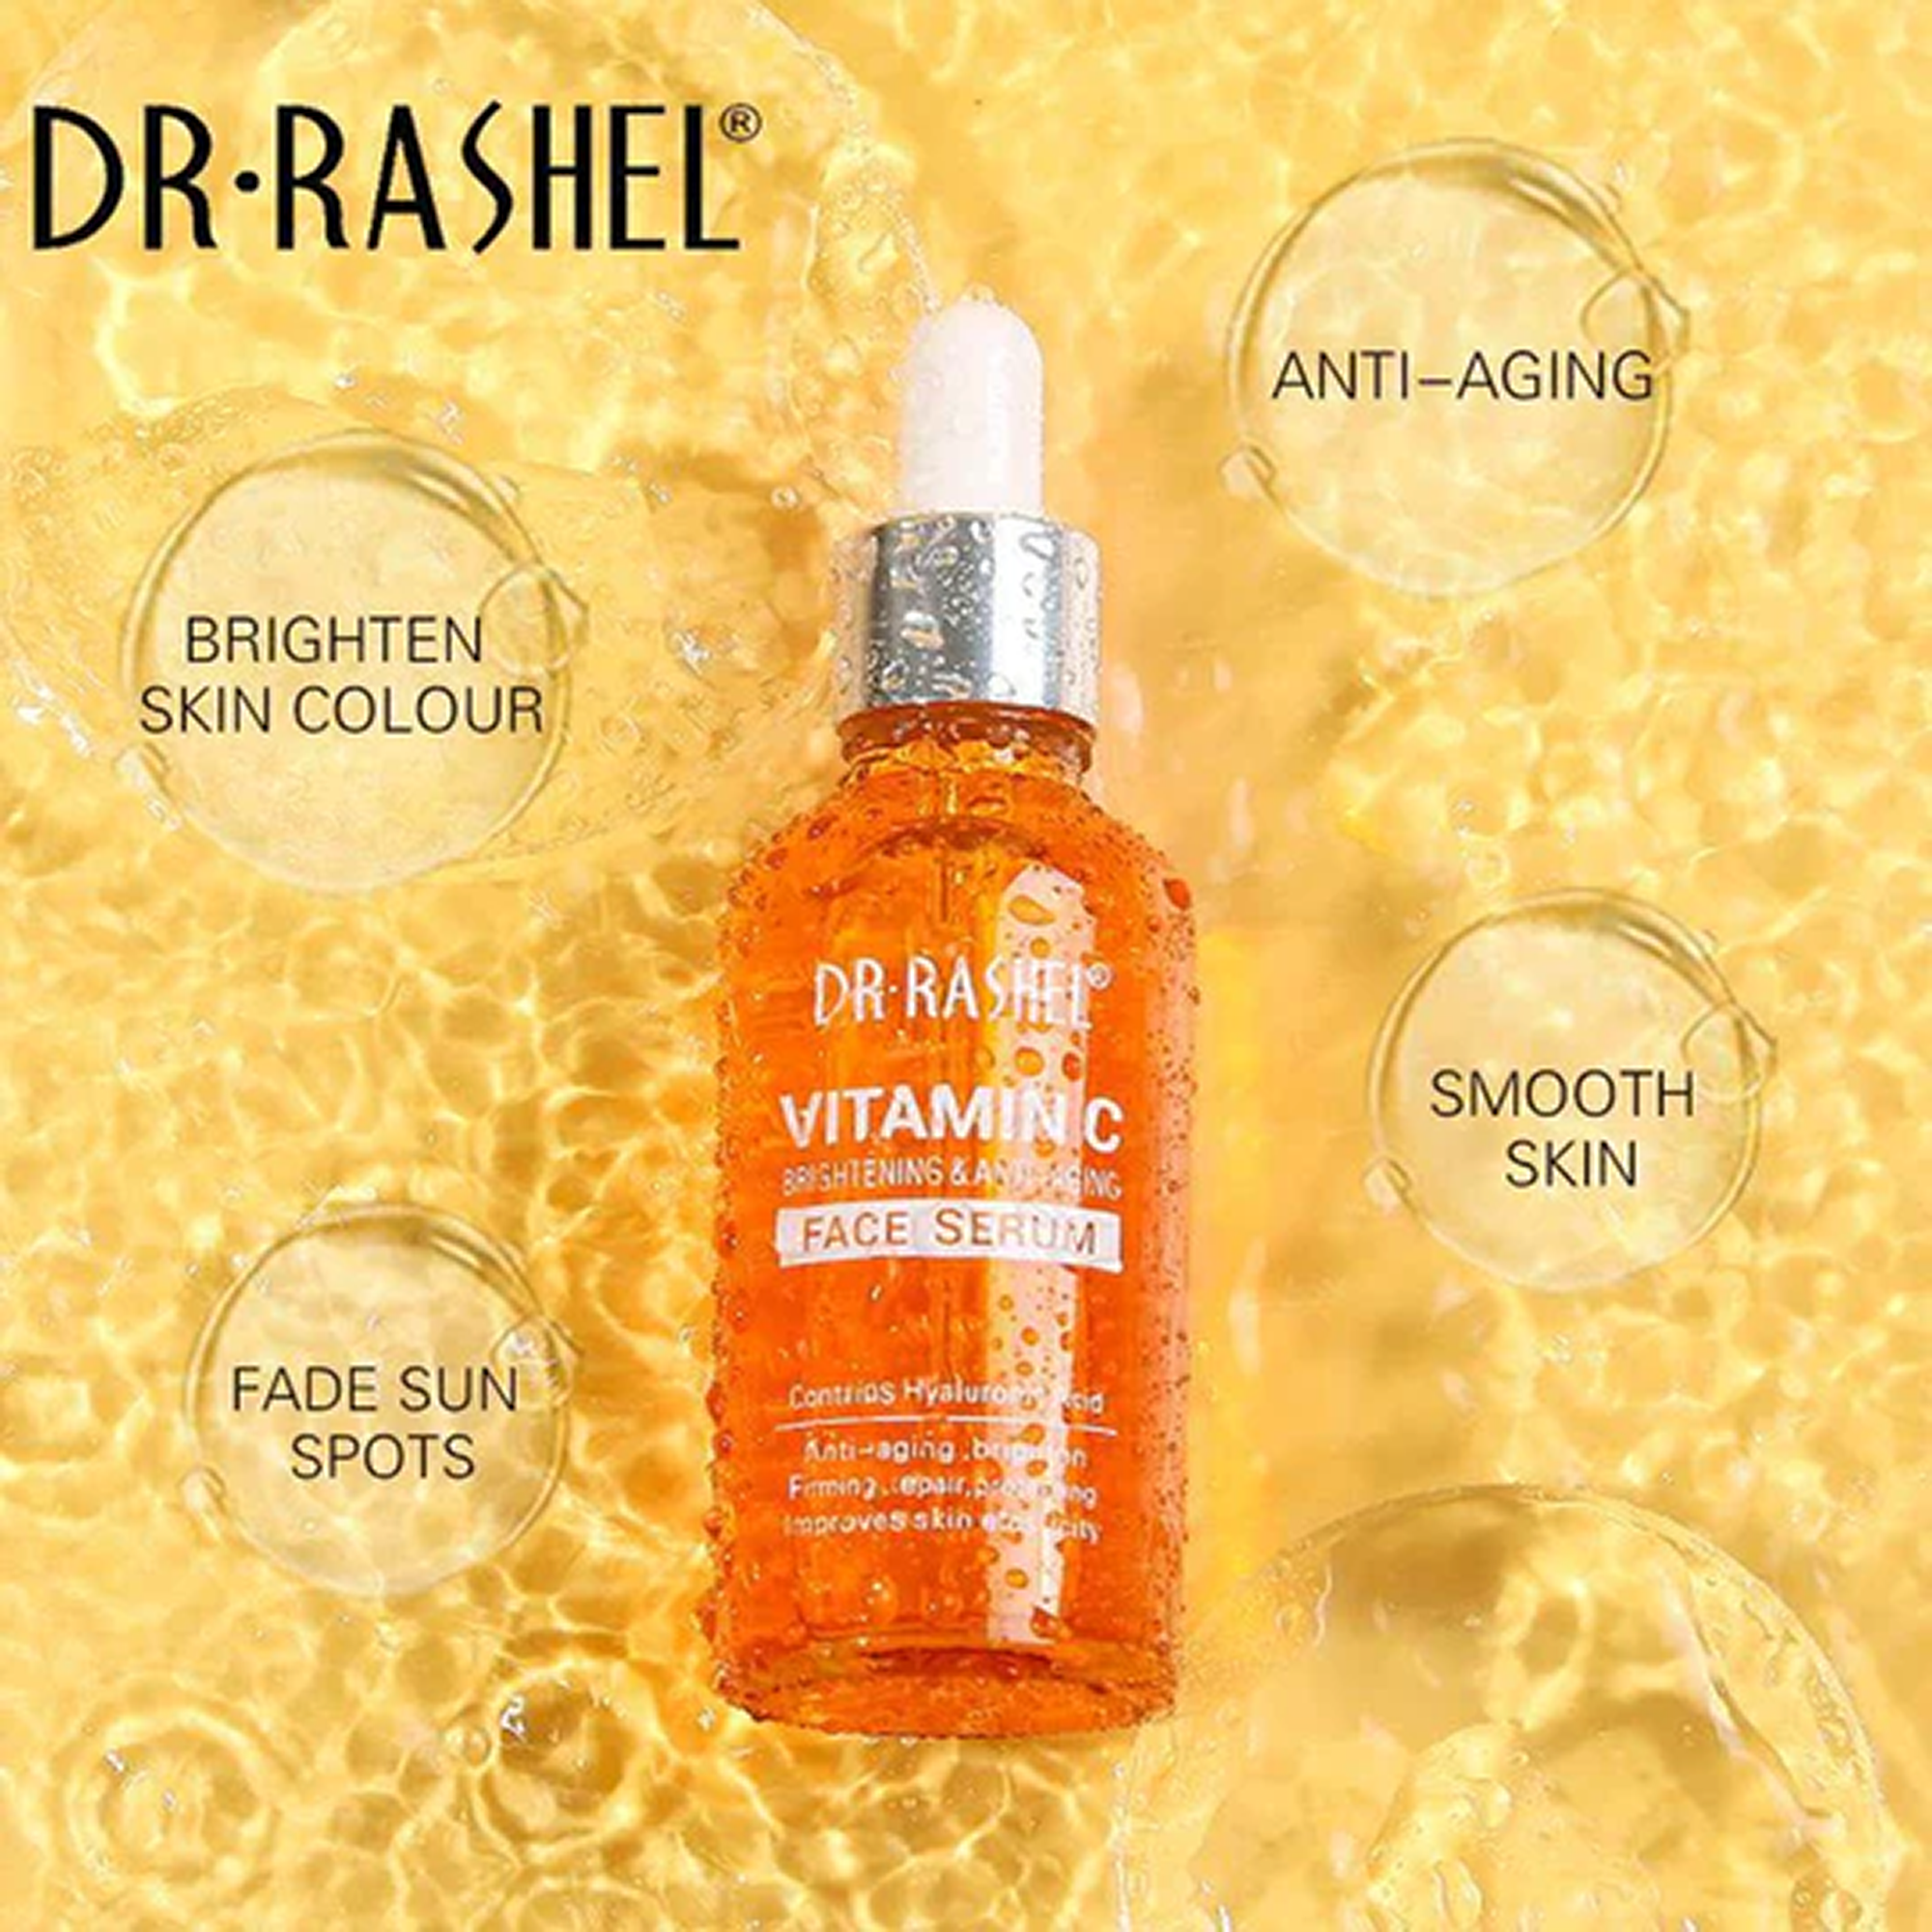 Dr-Rashel Vitamin C Face Serum